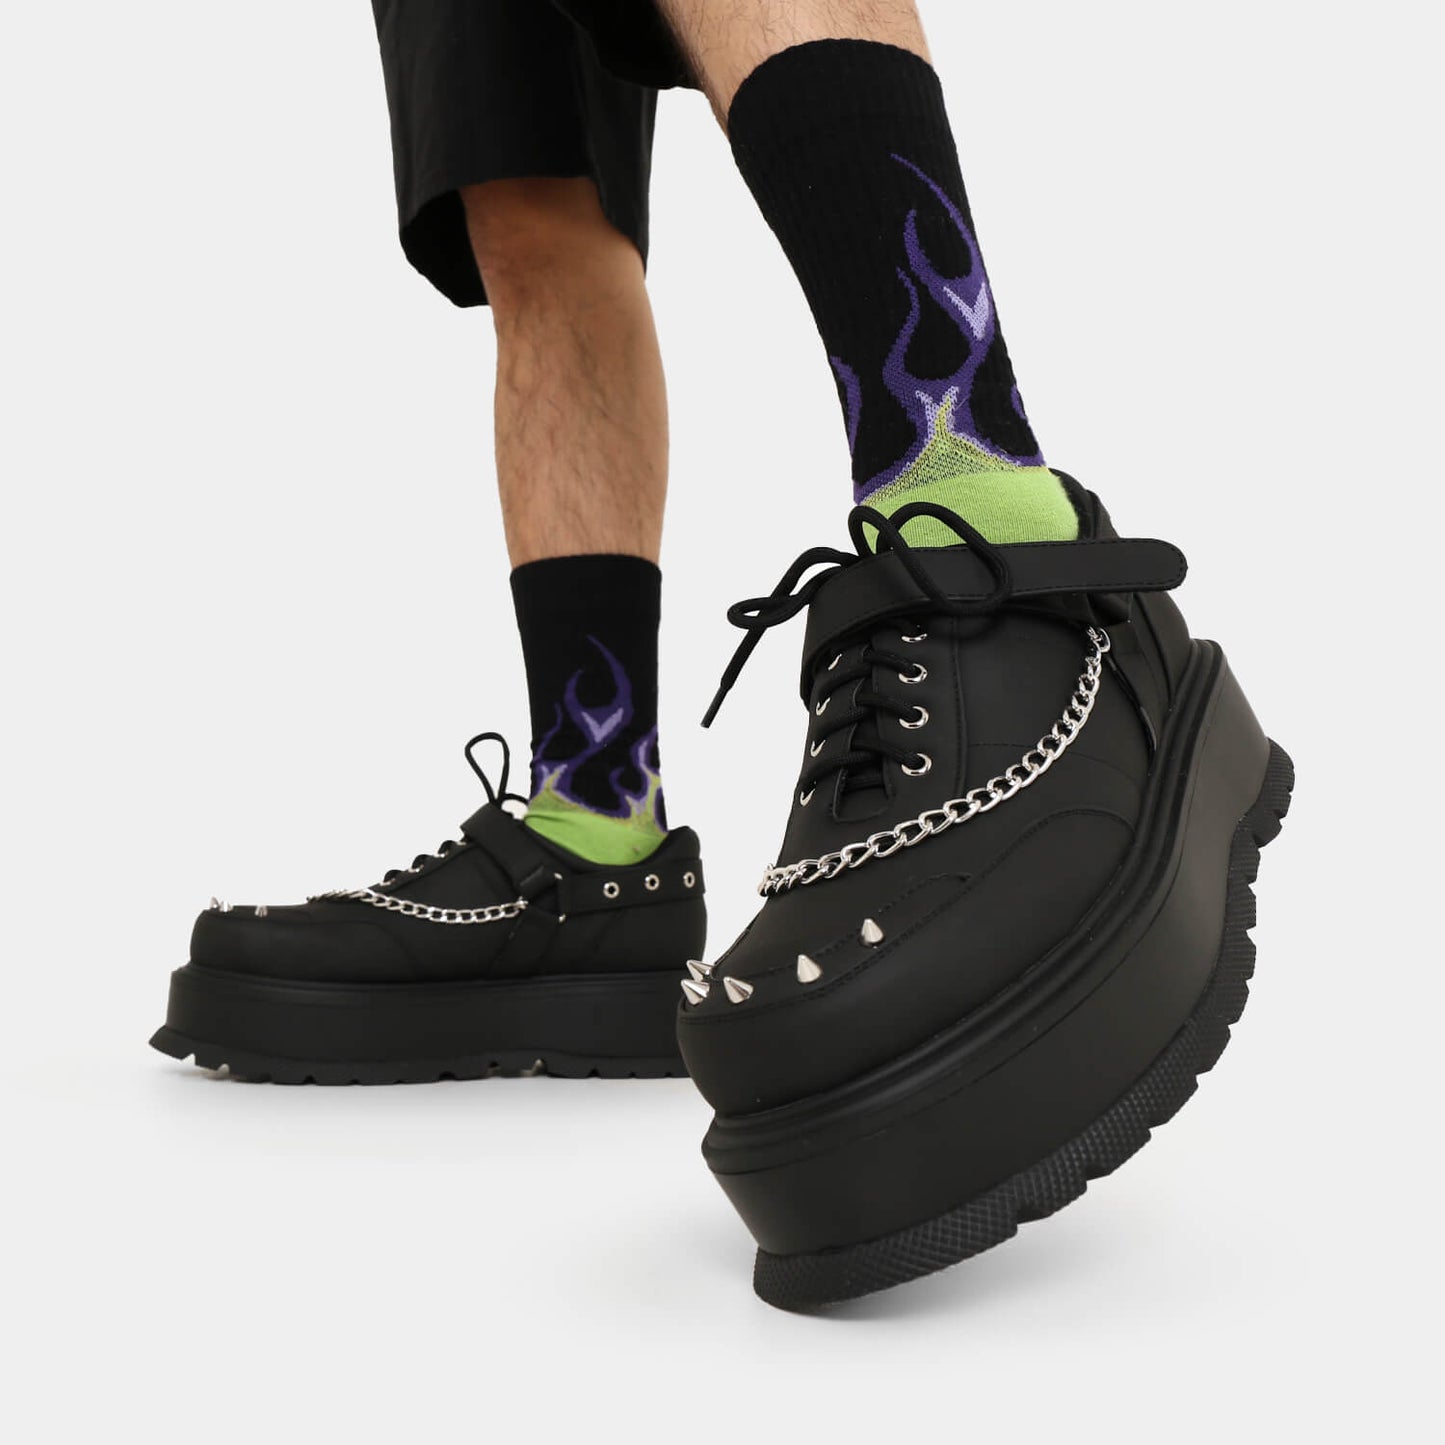 Retrograde Rebel Men's Black Platform Shoes - Shoes - KOI Footwear - Black - Model Left View